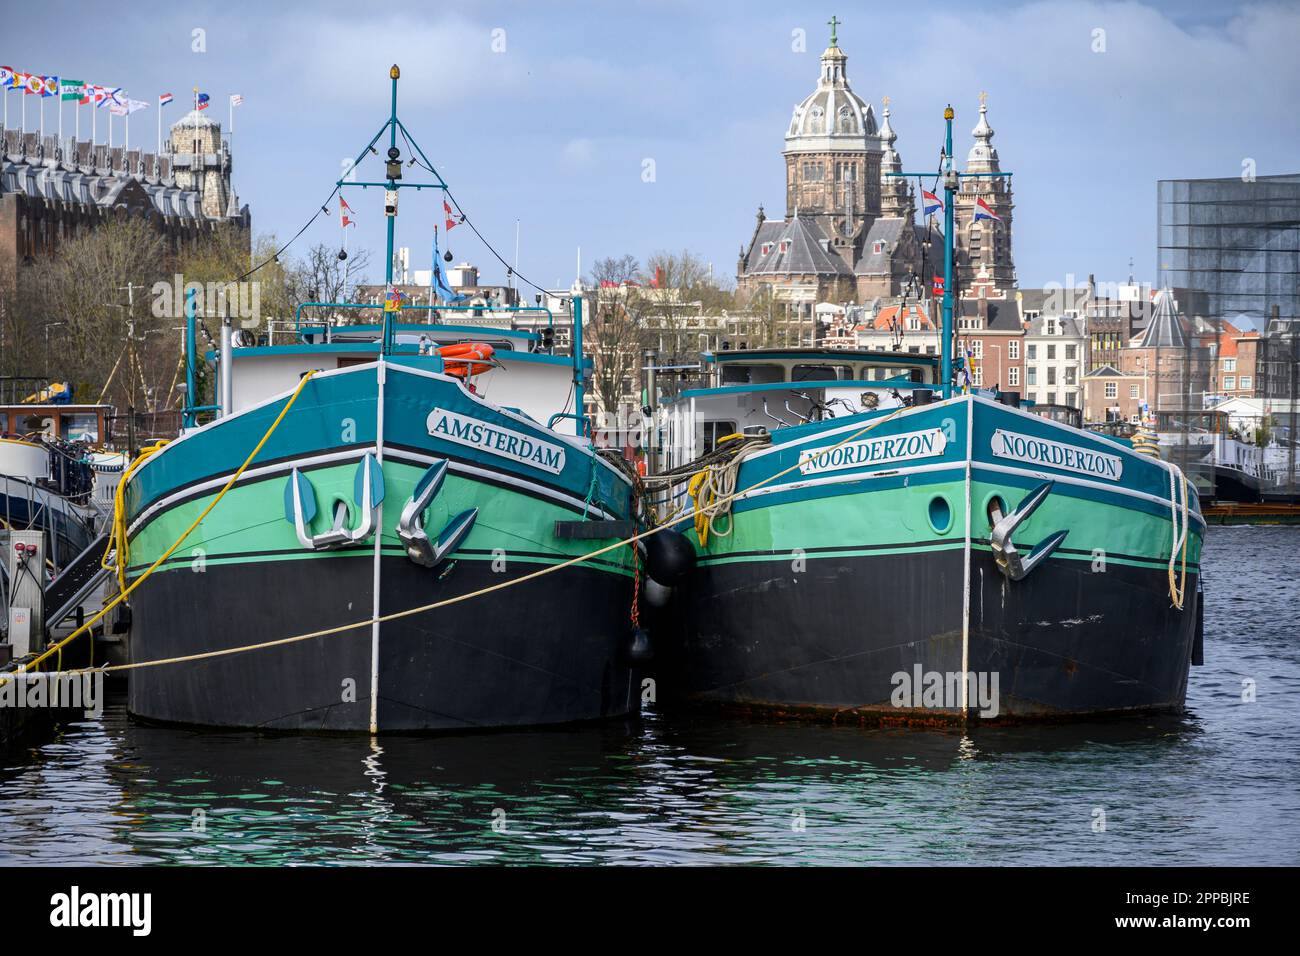 Zwei Kanalboote mit ähnlichen Farbschemen im Oosterdok, Amsterdam Stockfoto